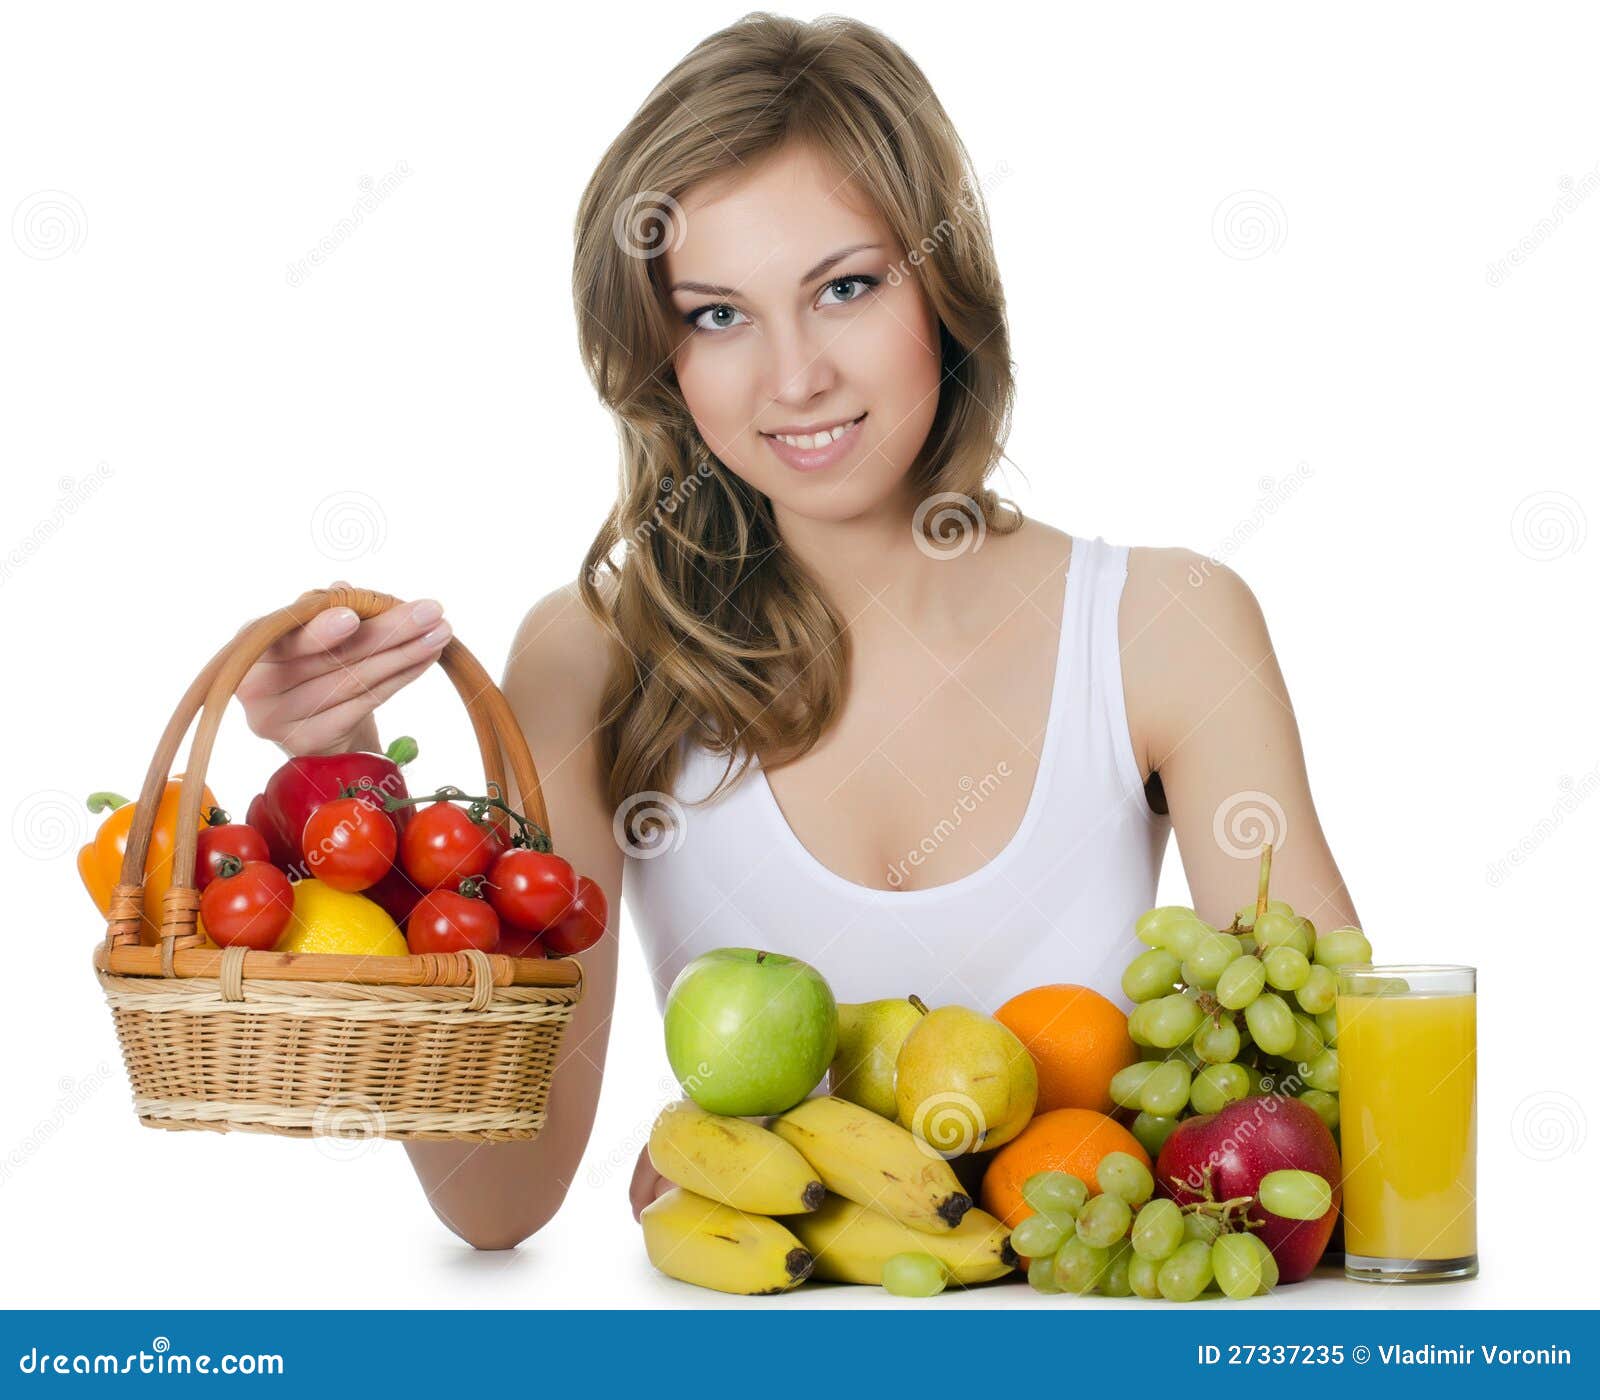 Mooi Meisje Met Fruit En Groenten Stock Afbeelding Image Of Vers